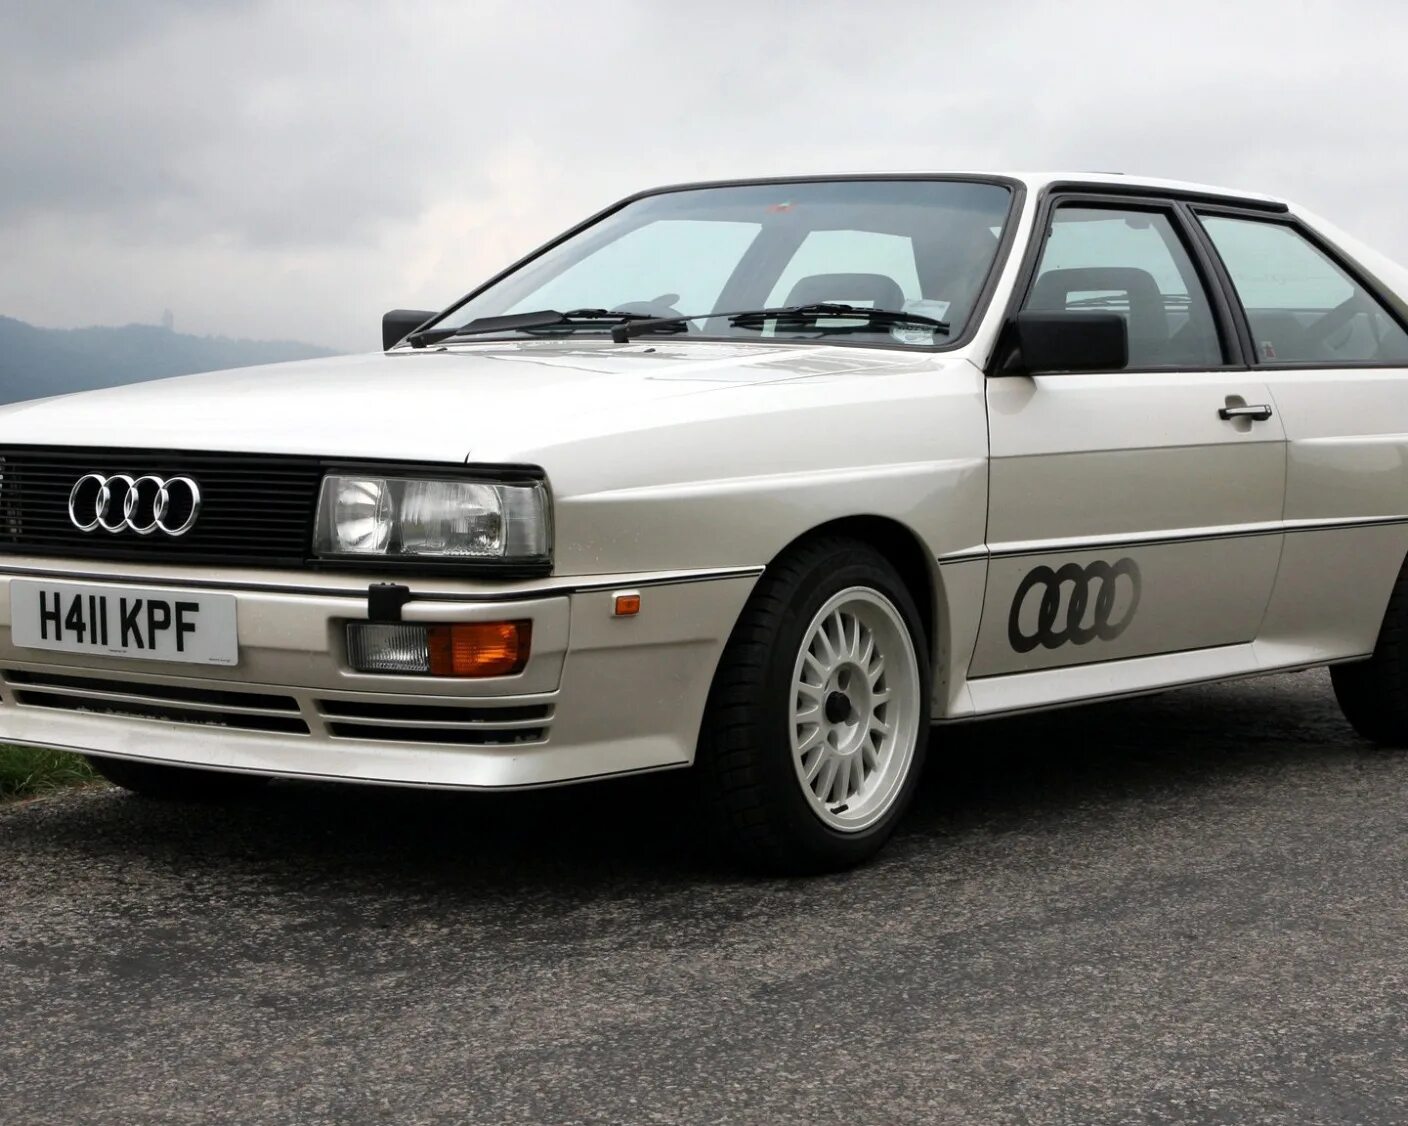 Audi quattro Coupe 1980. Audi 80 ur quattro. Ауди кватро 80 1980. Audi 80 Coupe quattro. Куплю ауди квадро